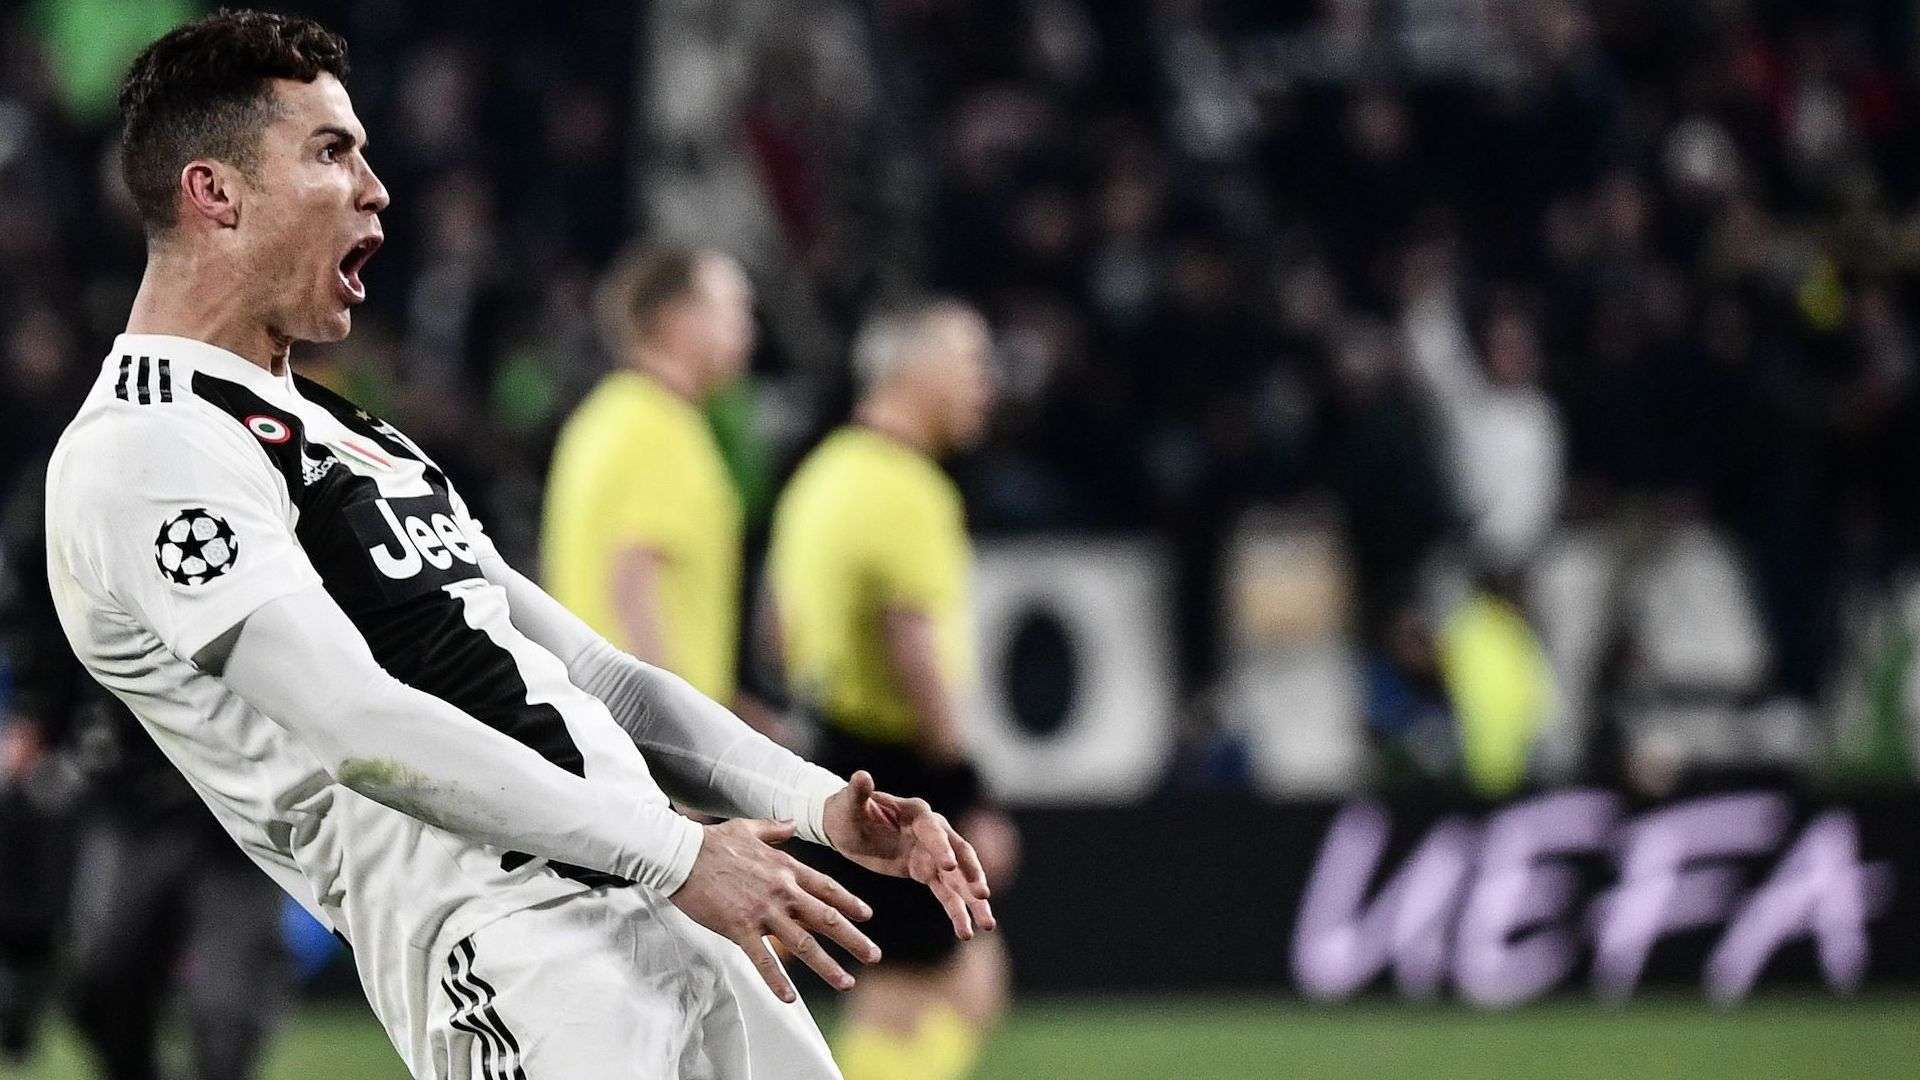 Cristiano Ronaldo - Juventus